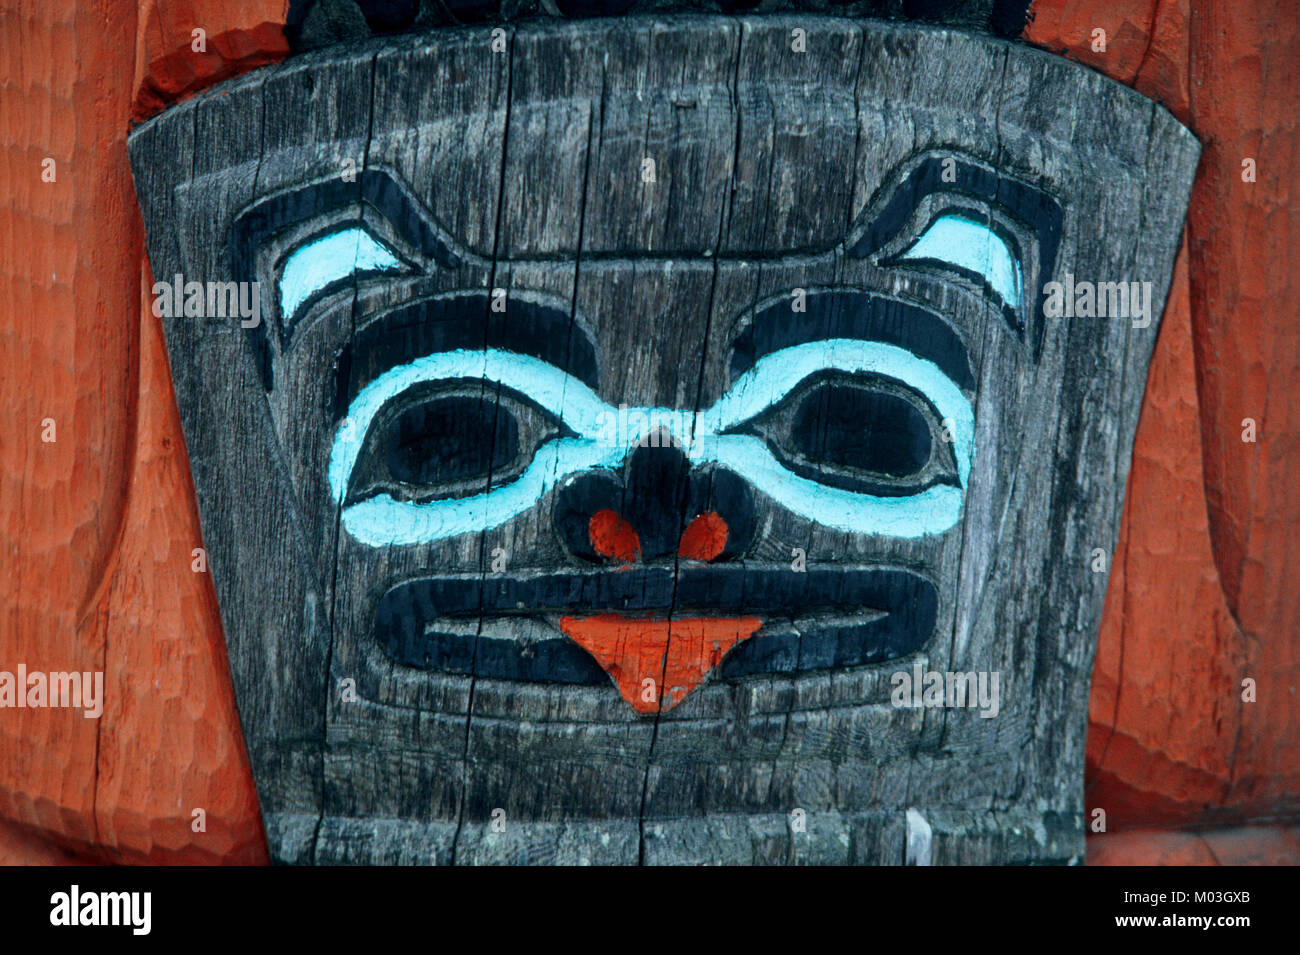 Détail de Totem Tlingit, Haines, Alaska, USA / Indiens Tlingit | Détails Totempfahls Tlingit-Indianer von der une Hauswand, Haines, Alaska, USA Banque D'Images